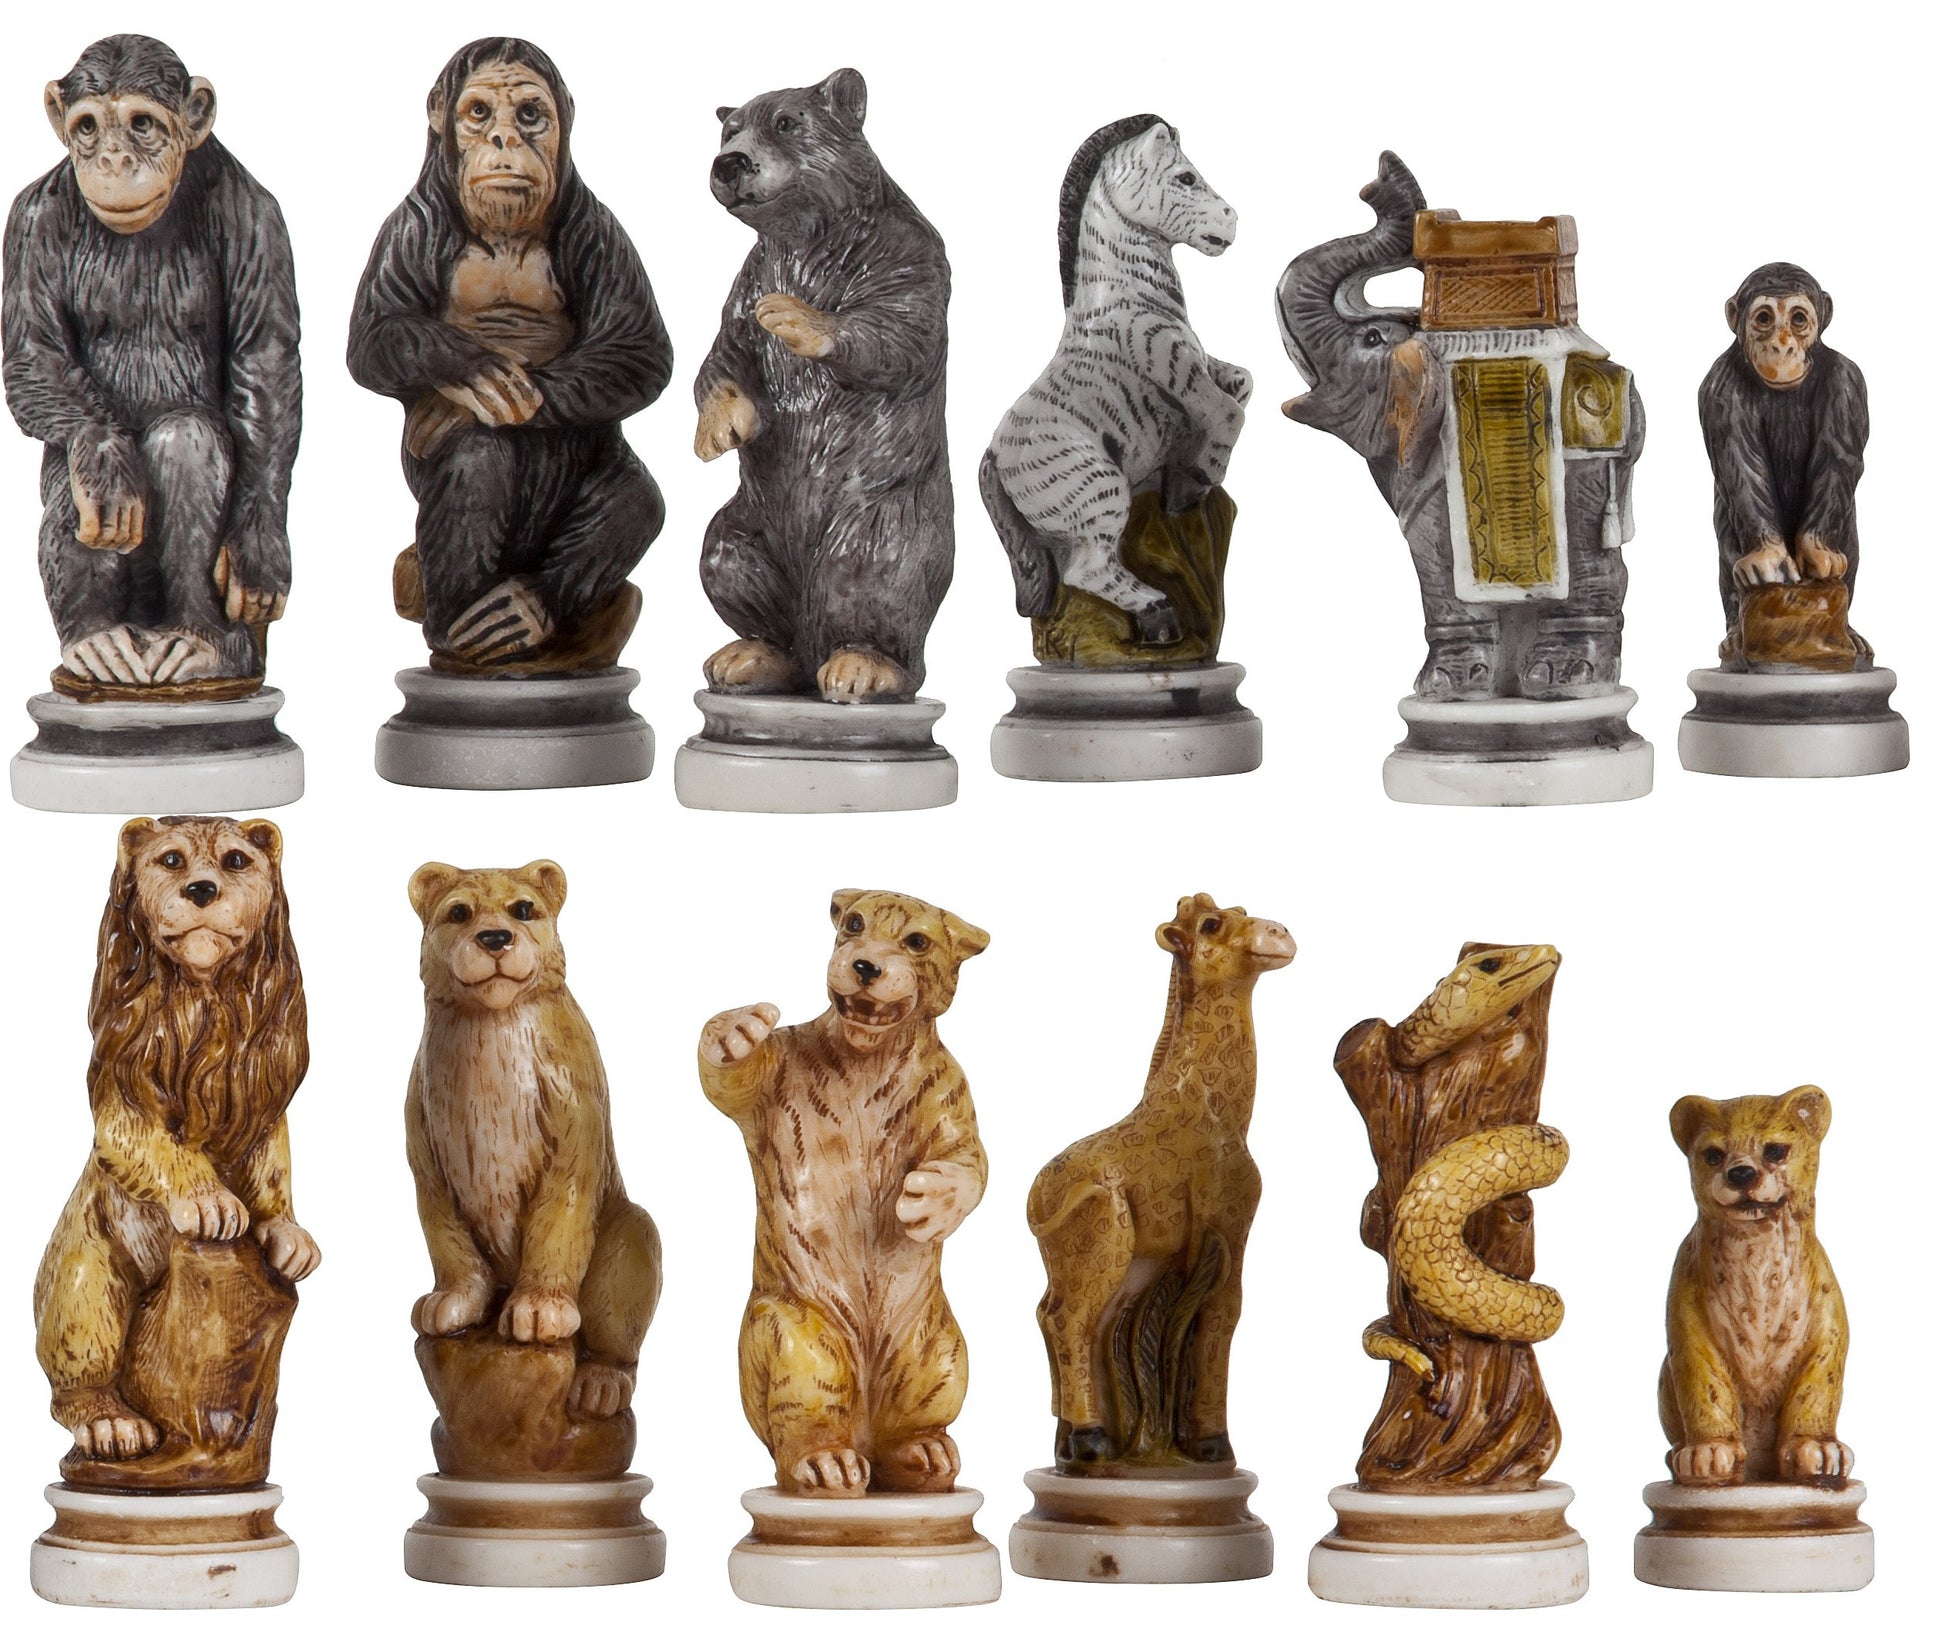 Animal Kingdom Themed Chessmen